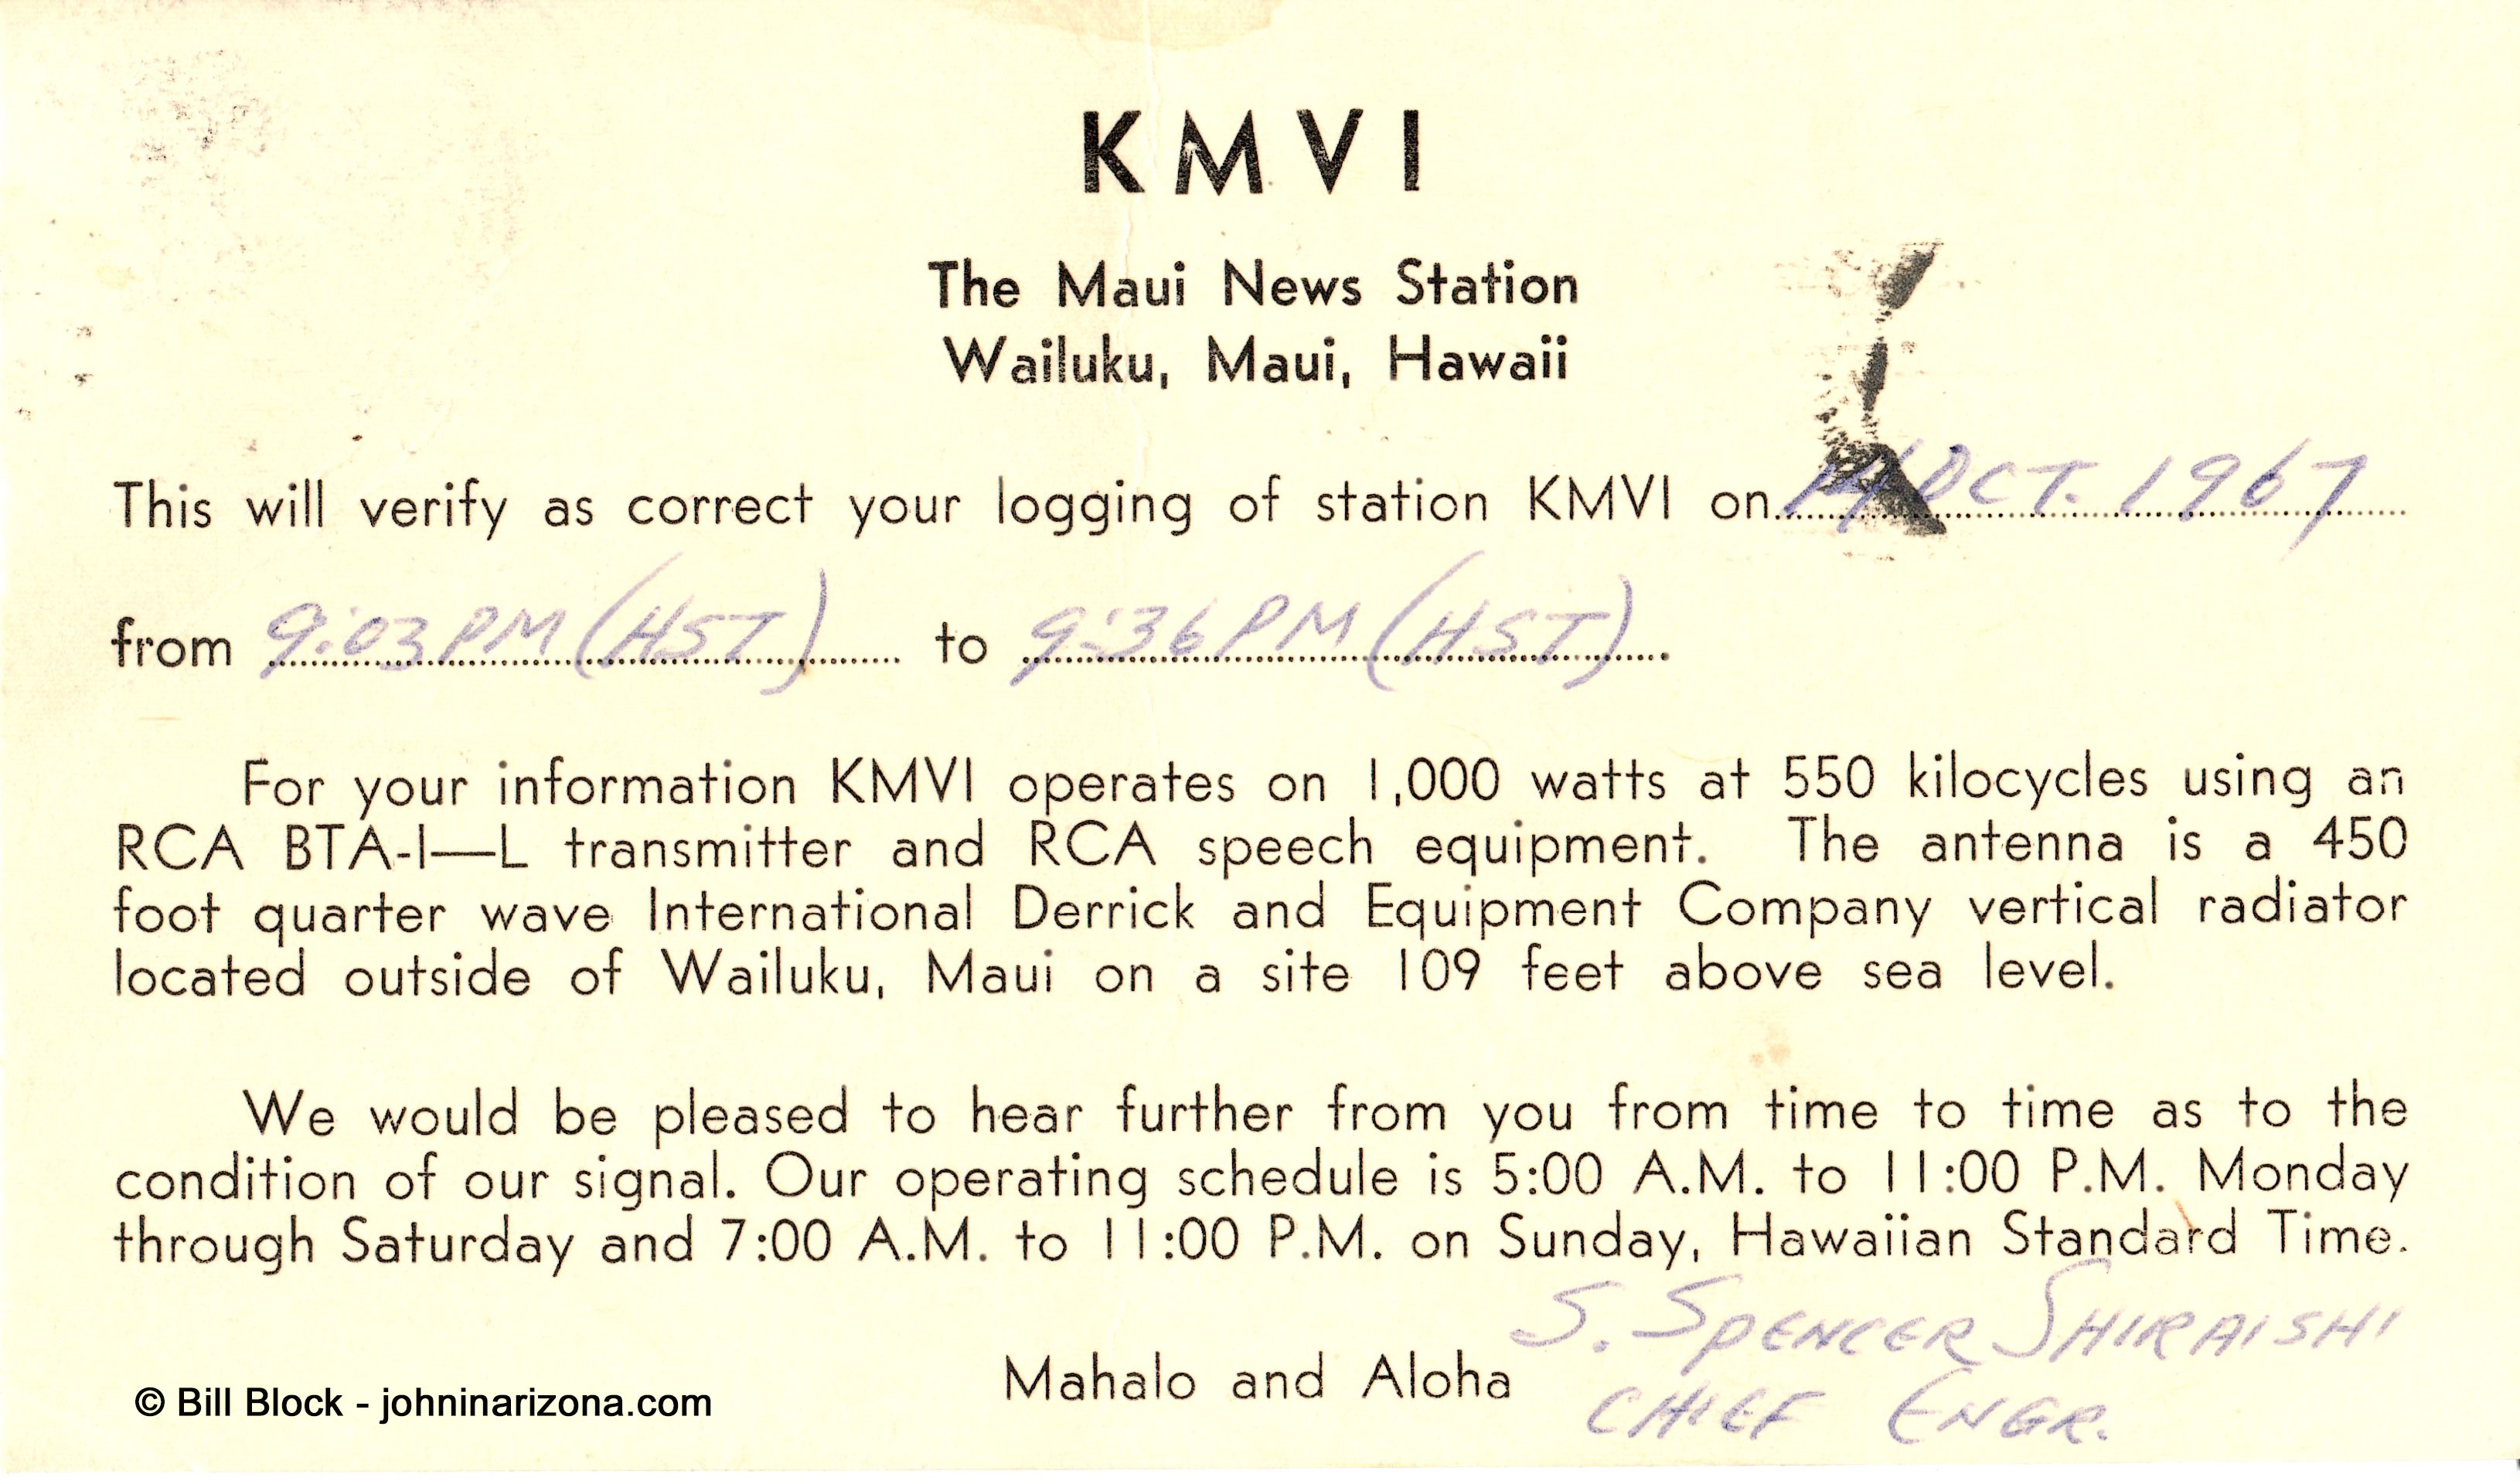 KMVI Radio 550 Wailuku, Maui, Hawaii - 1967